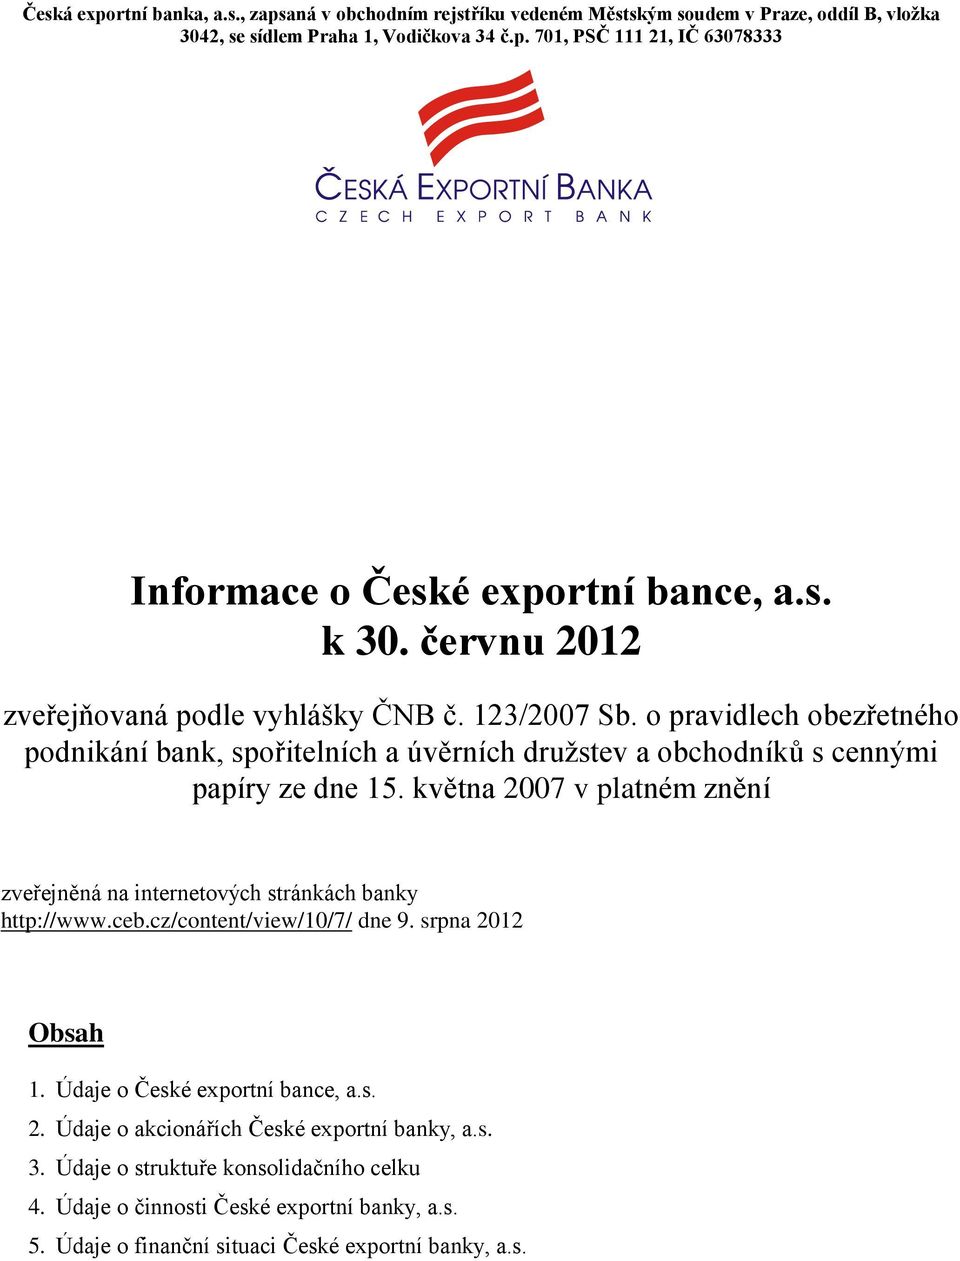 května 2007 v platném znění zveřejněná na internetových stránkách banky http://www.ceb.cz/content/view/10/7/ dne 9. srpna 2012 Obsah 1. Údaje o České exportní bance, a.s. 2. Údaje o akcionářích České exportní banky, a.